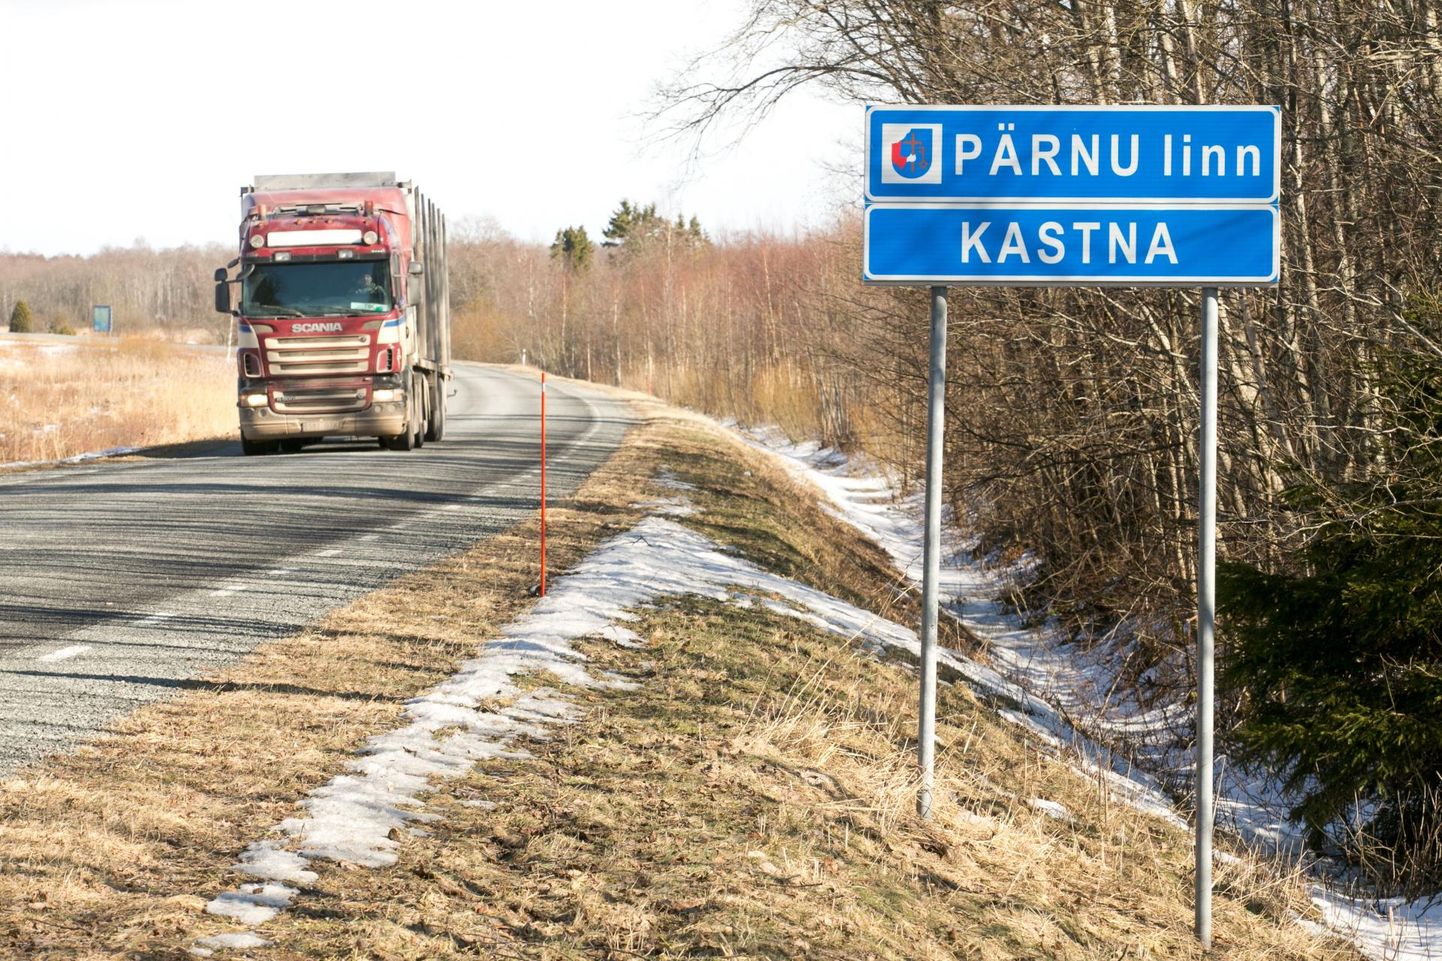 Haldusreformiga tehtud! Pärnu linna sees on oluliselt suurem Pärnu linn ja keegi ei imesta.